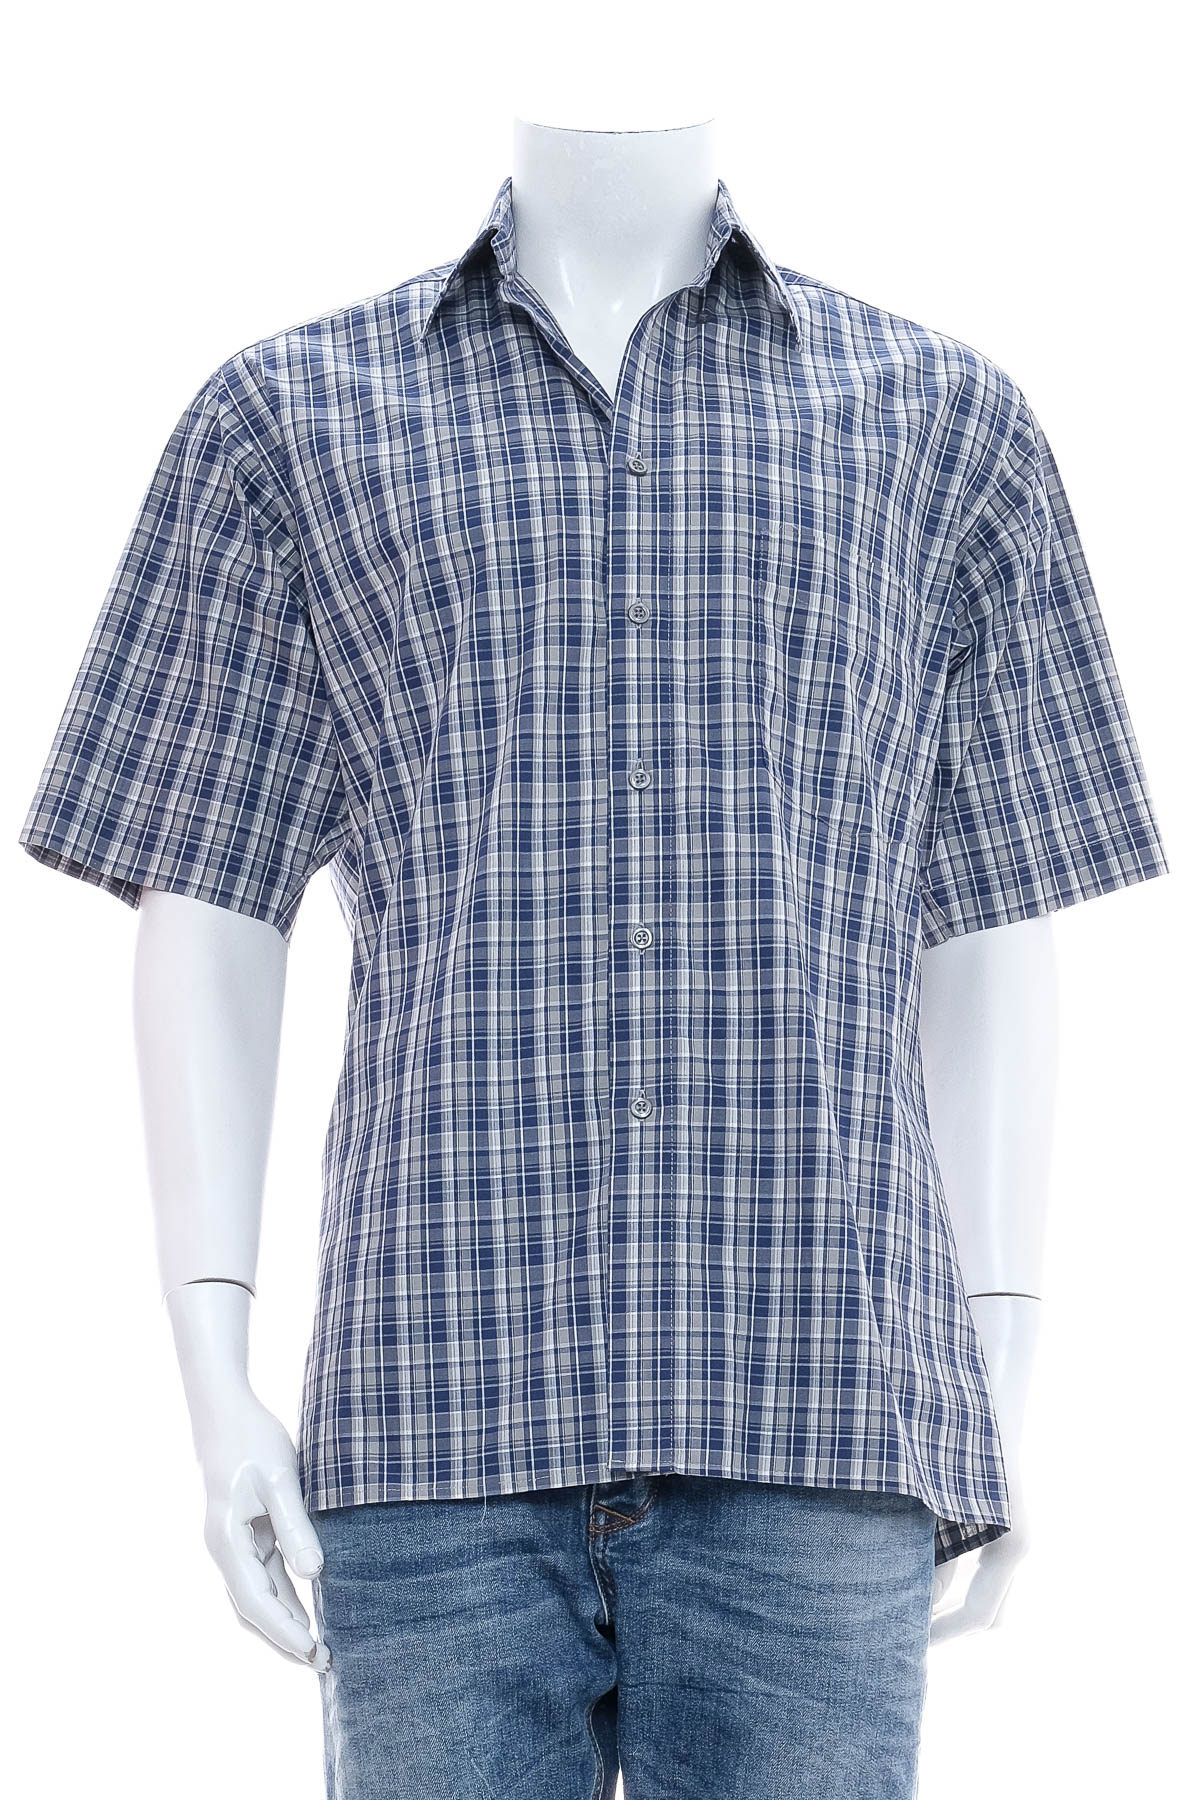 Ανδρικό πουκάμισο - Sk l'uomoda - 0